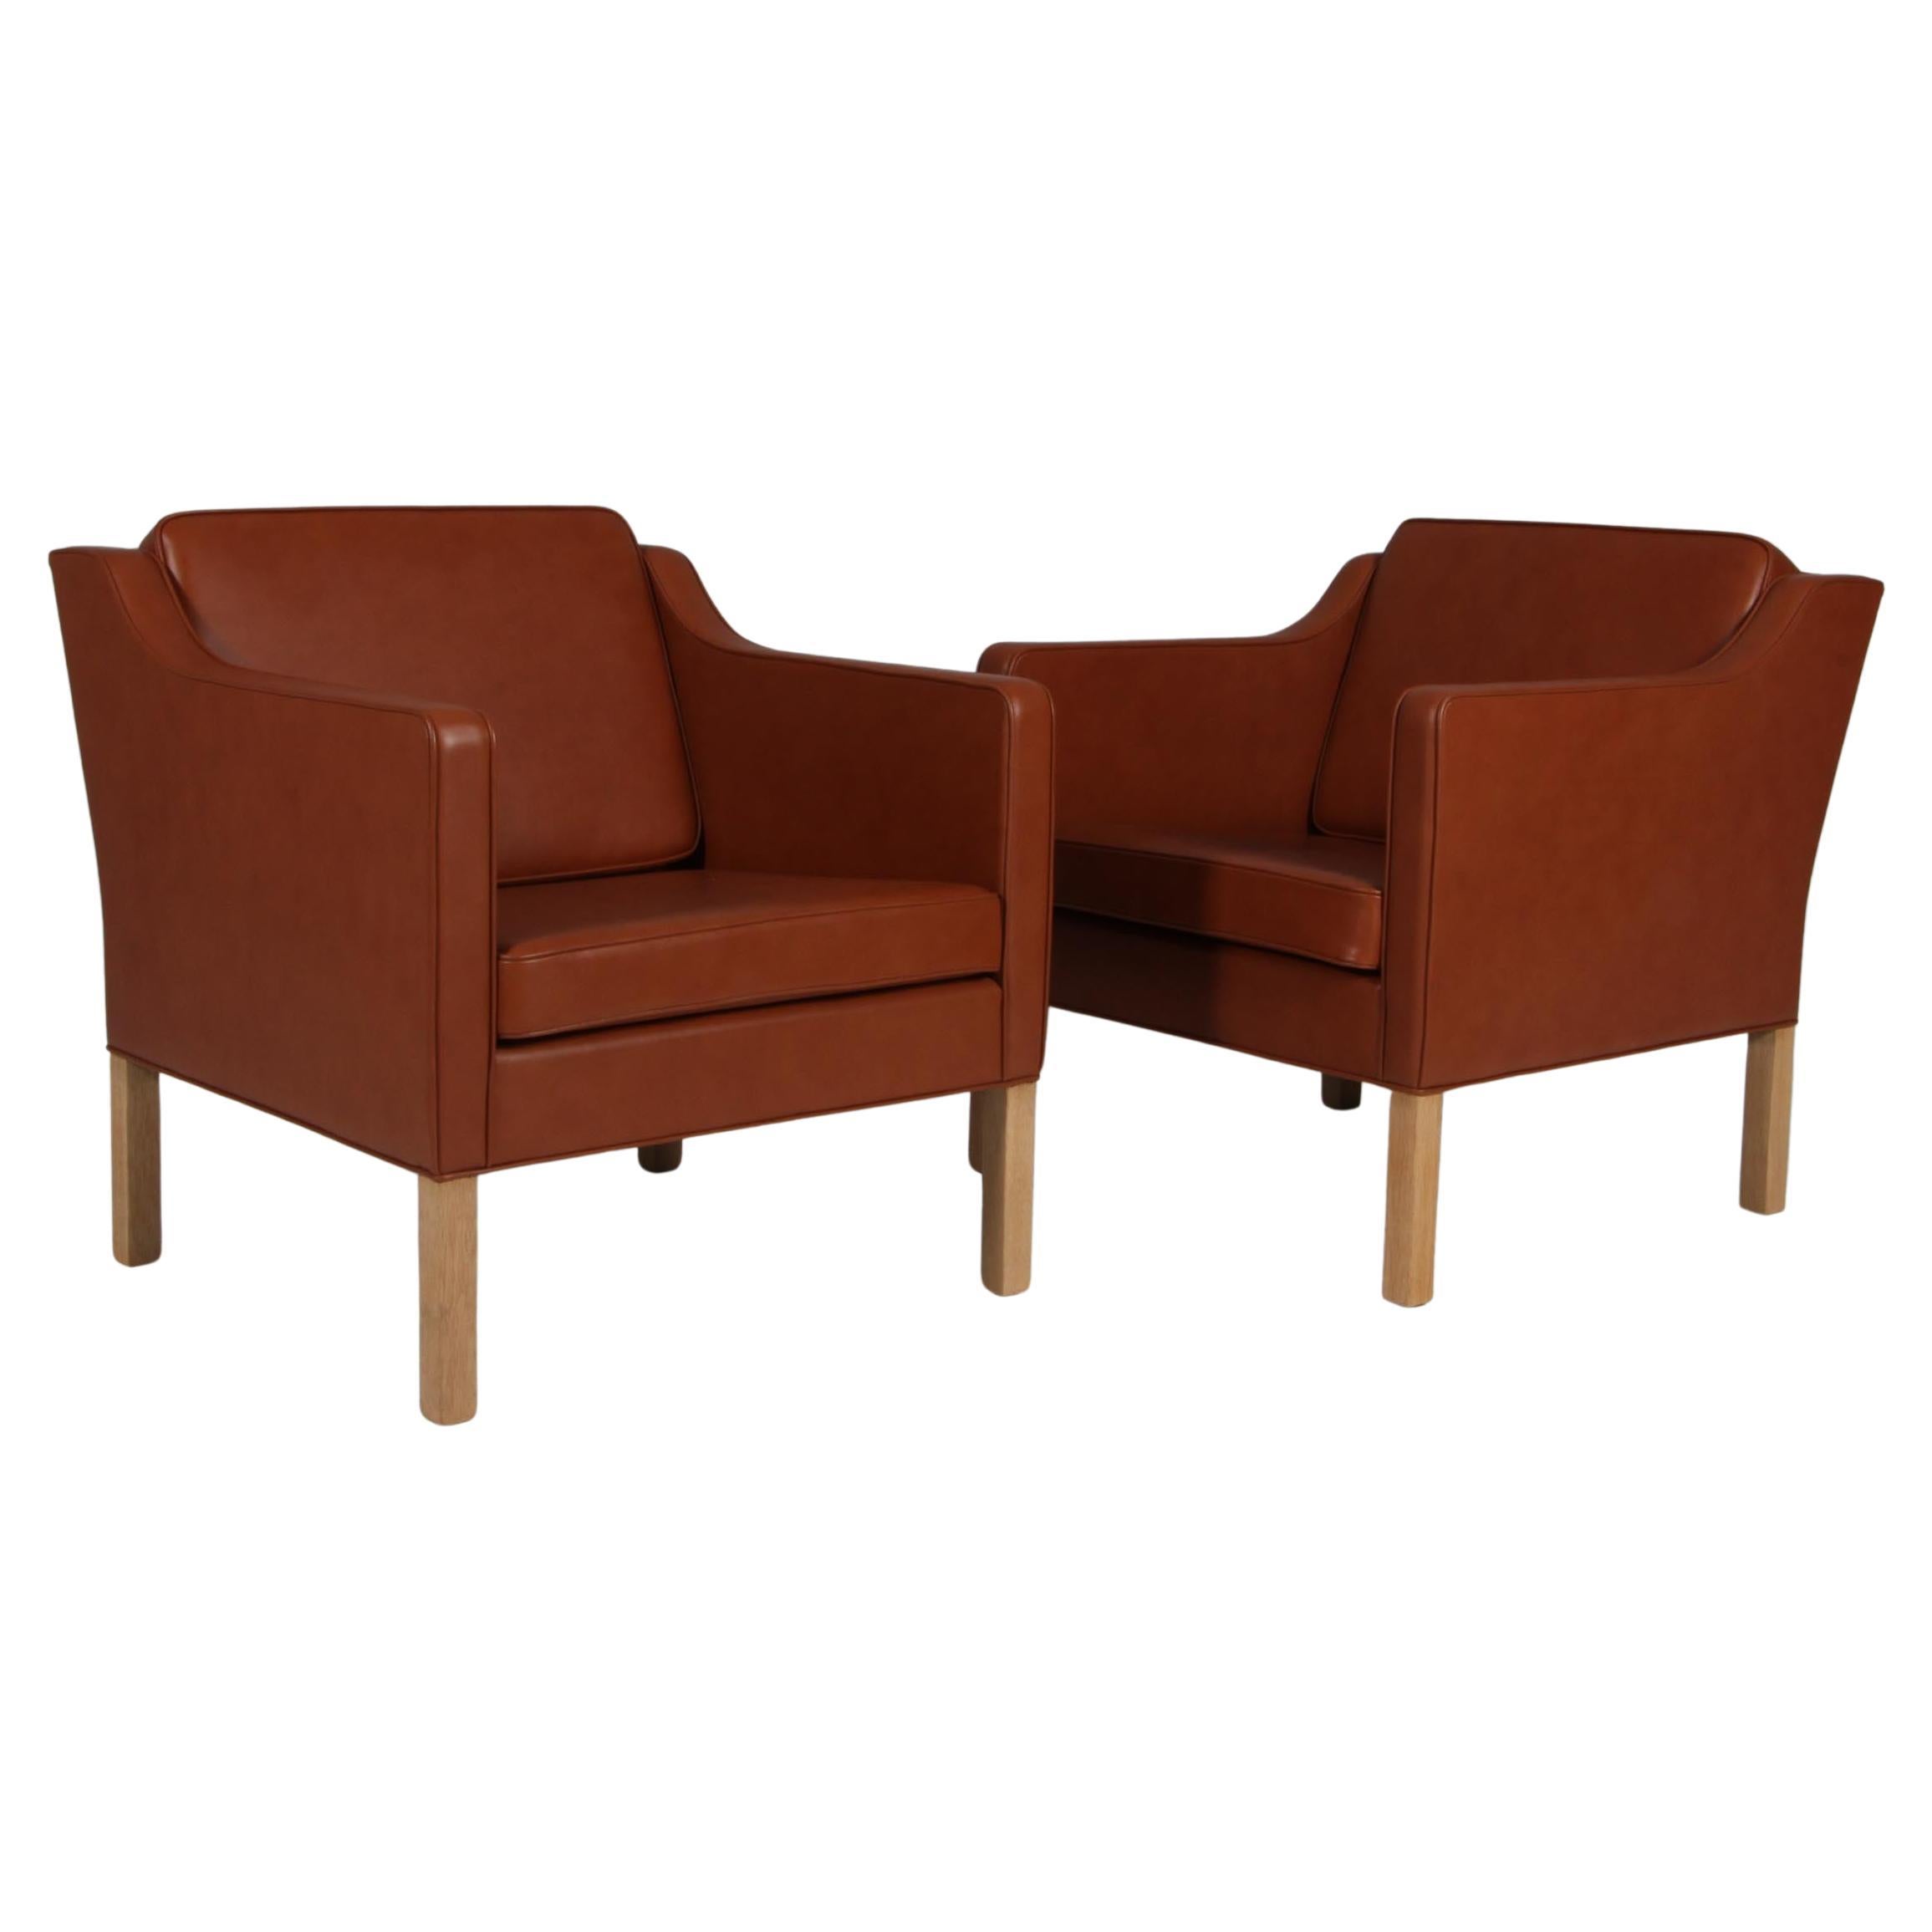 Børge Mogensen Lounge Chair, Model 2321, cognac full grain